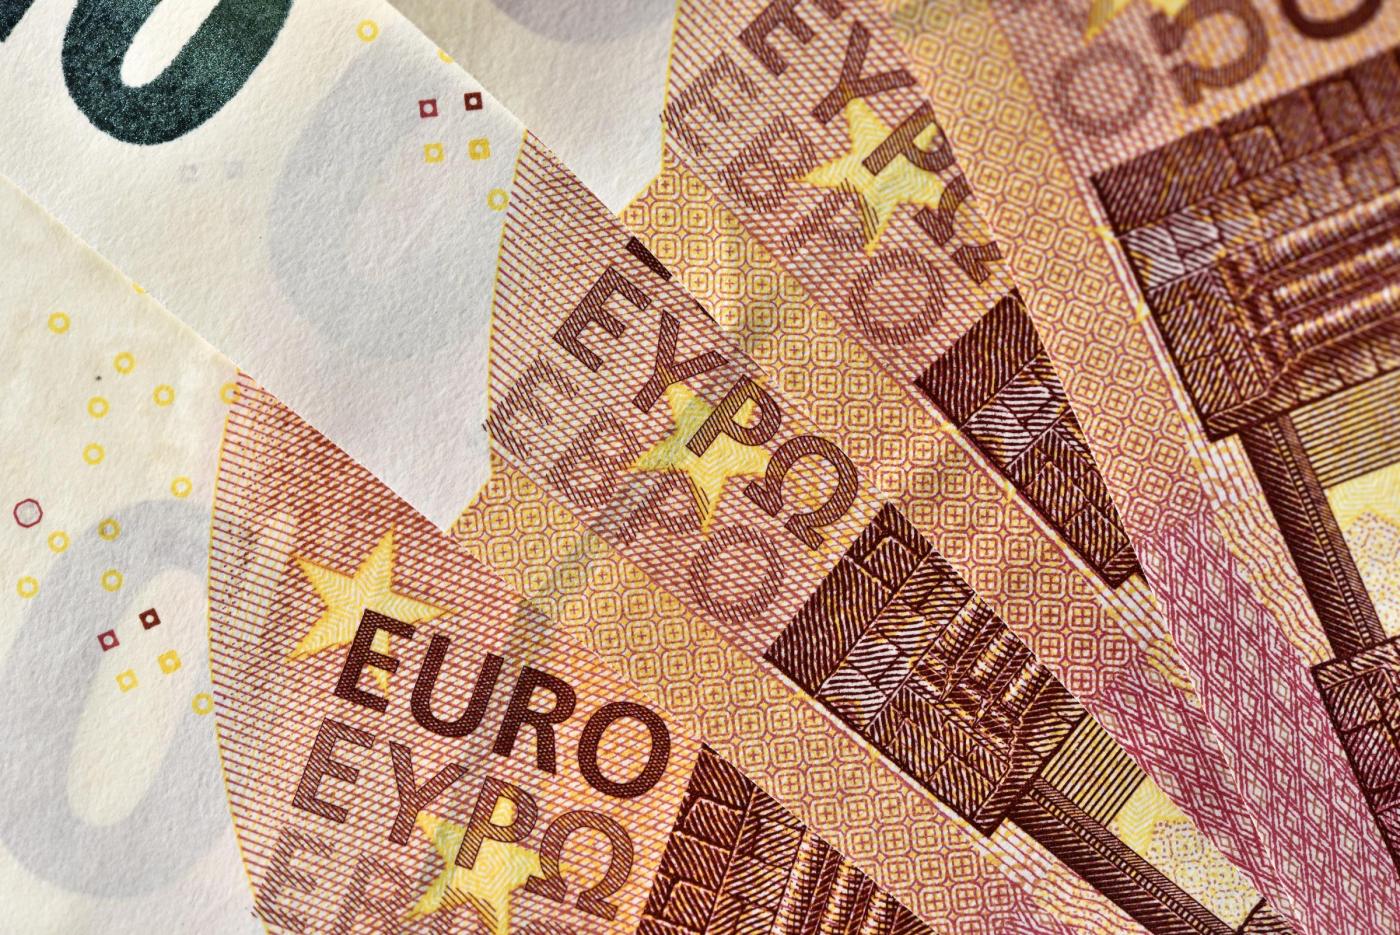 Banconote in euro, cosa è raffigurato sulla carta moneta dell’Europa